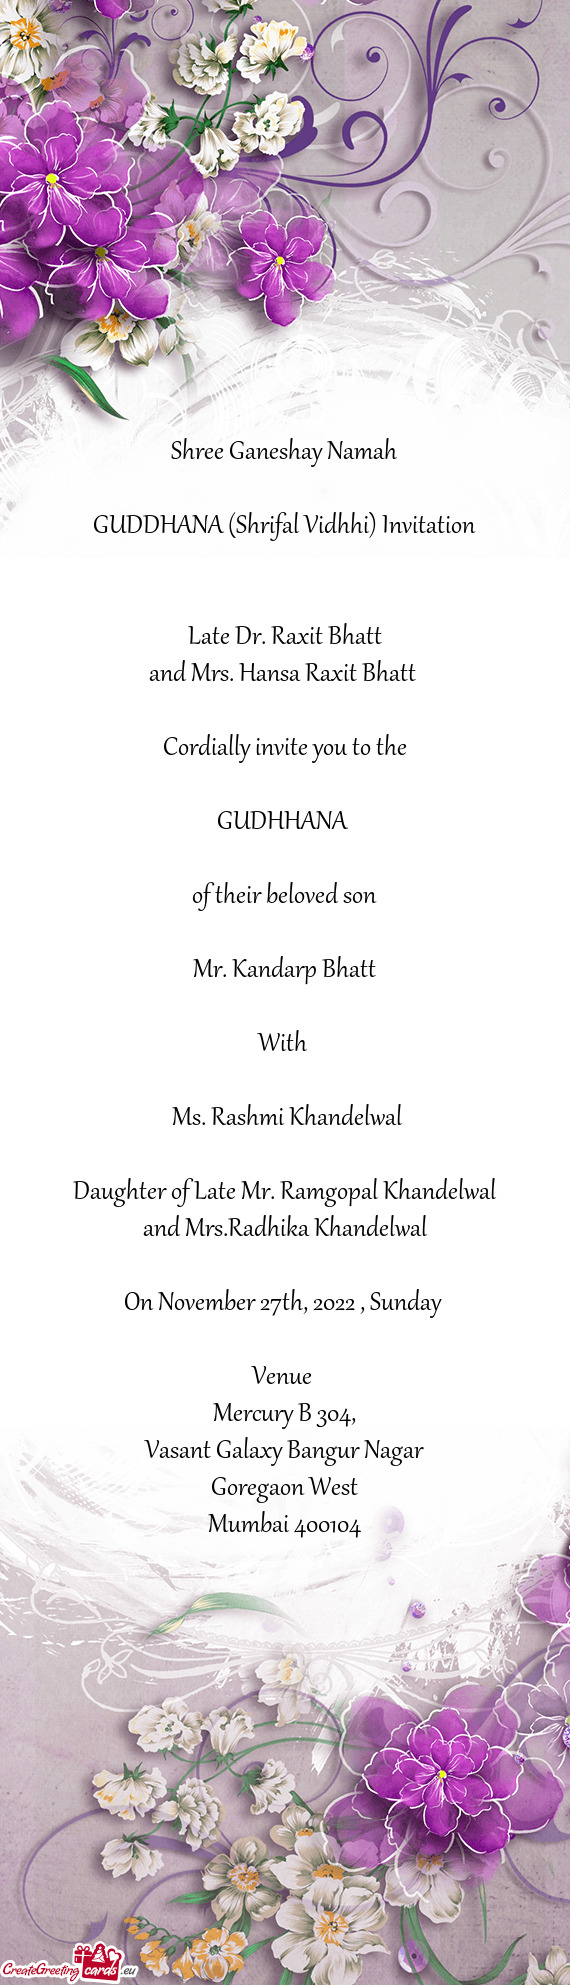 GUDDHANA (Shrifal Vidhhi) Invitation